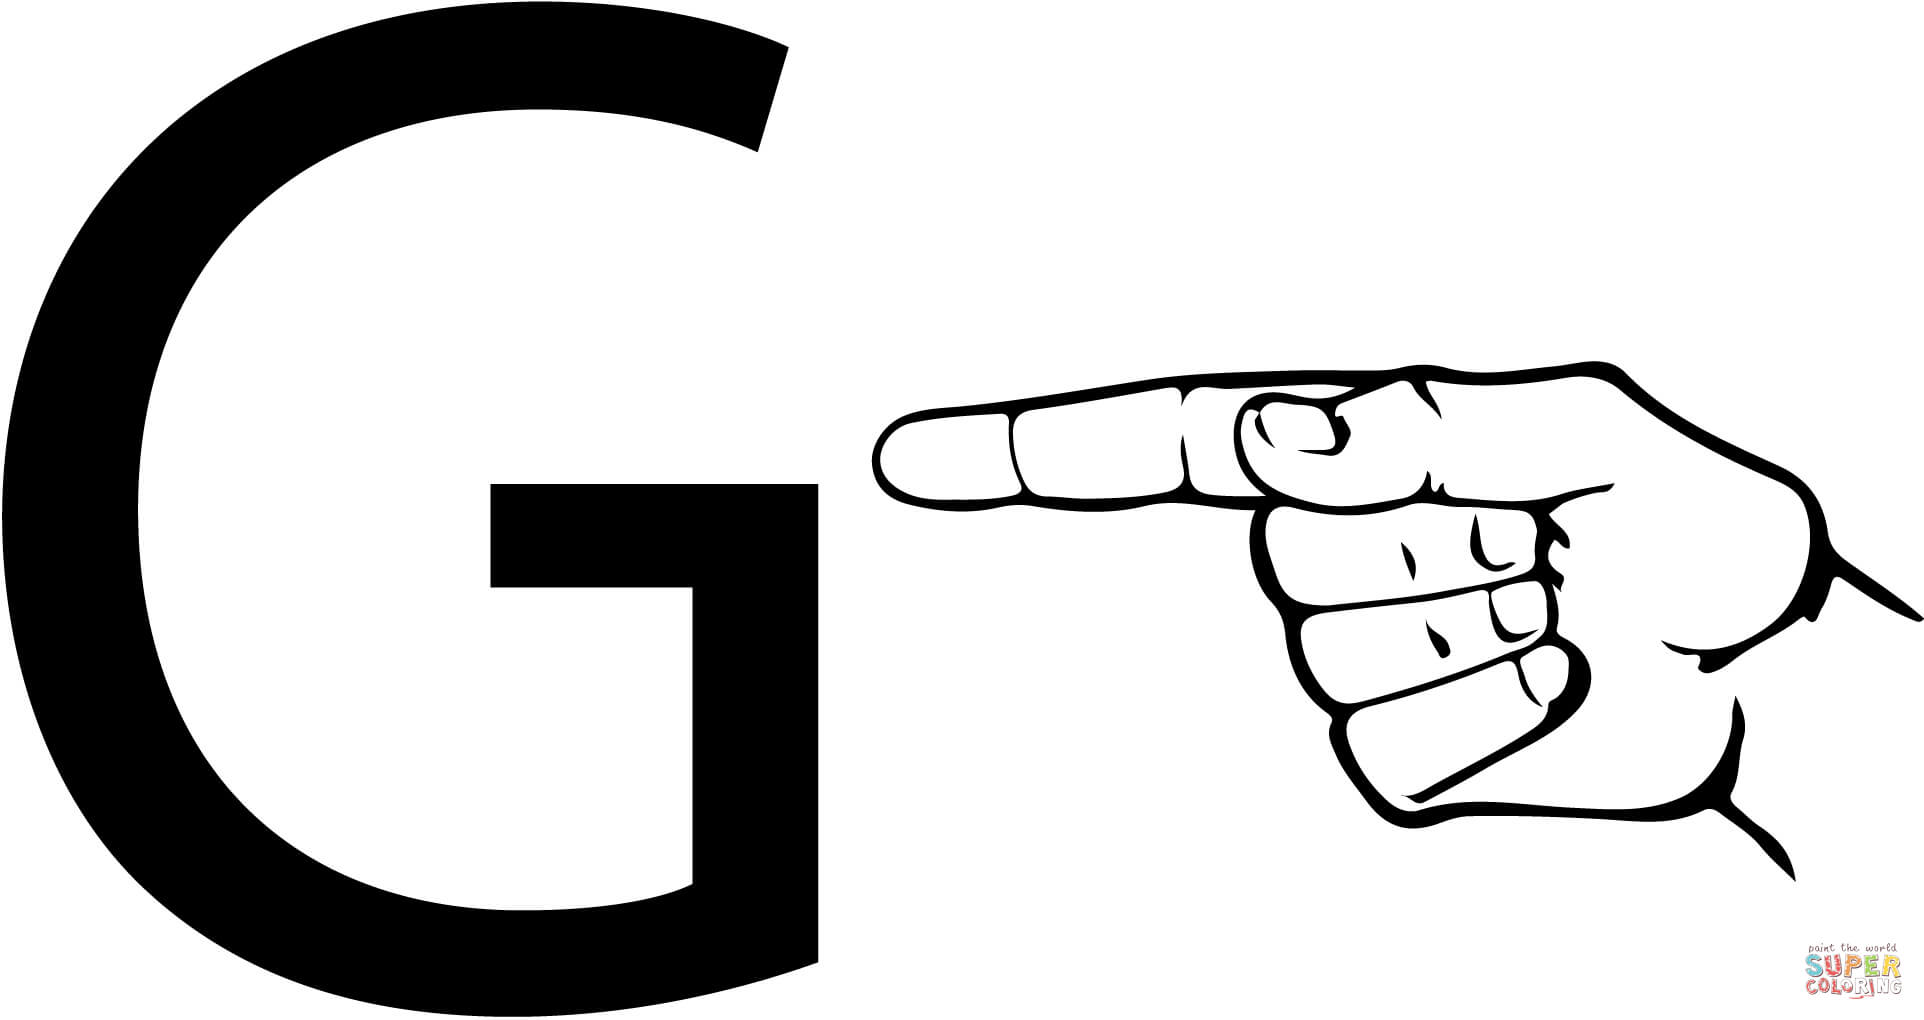 Letra G da linguagem de sinais ASL da letra G